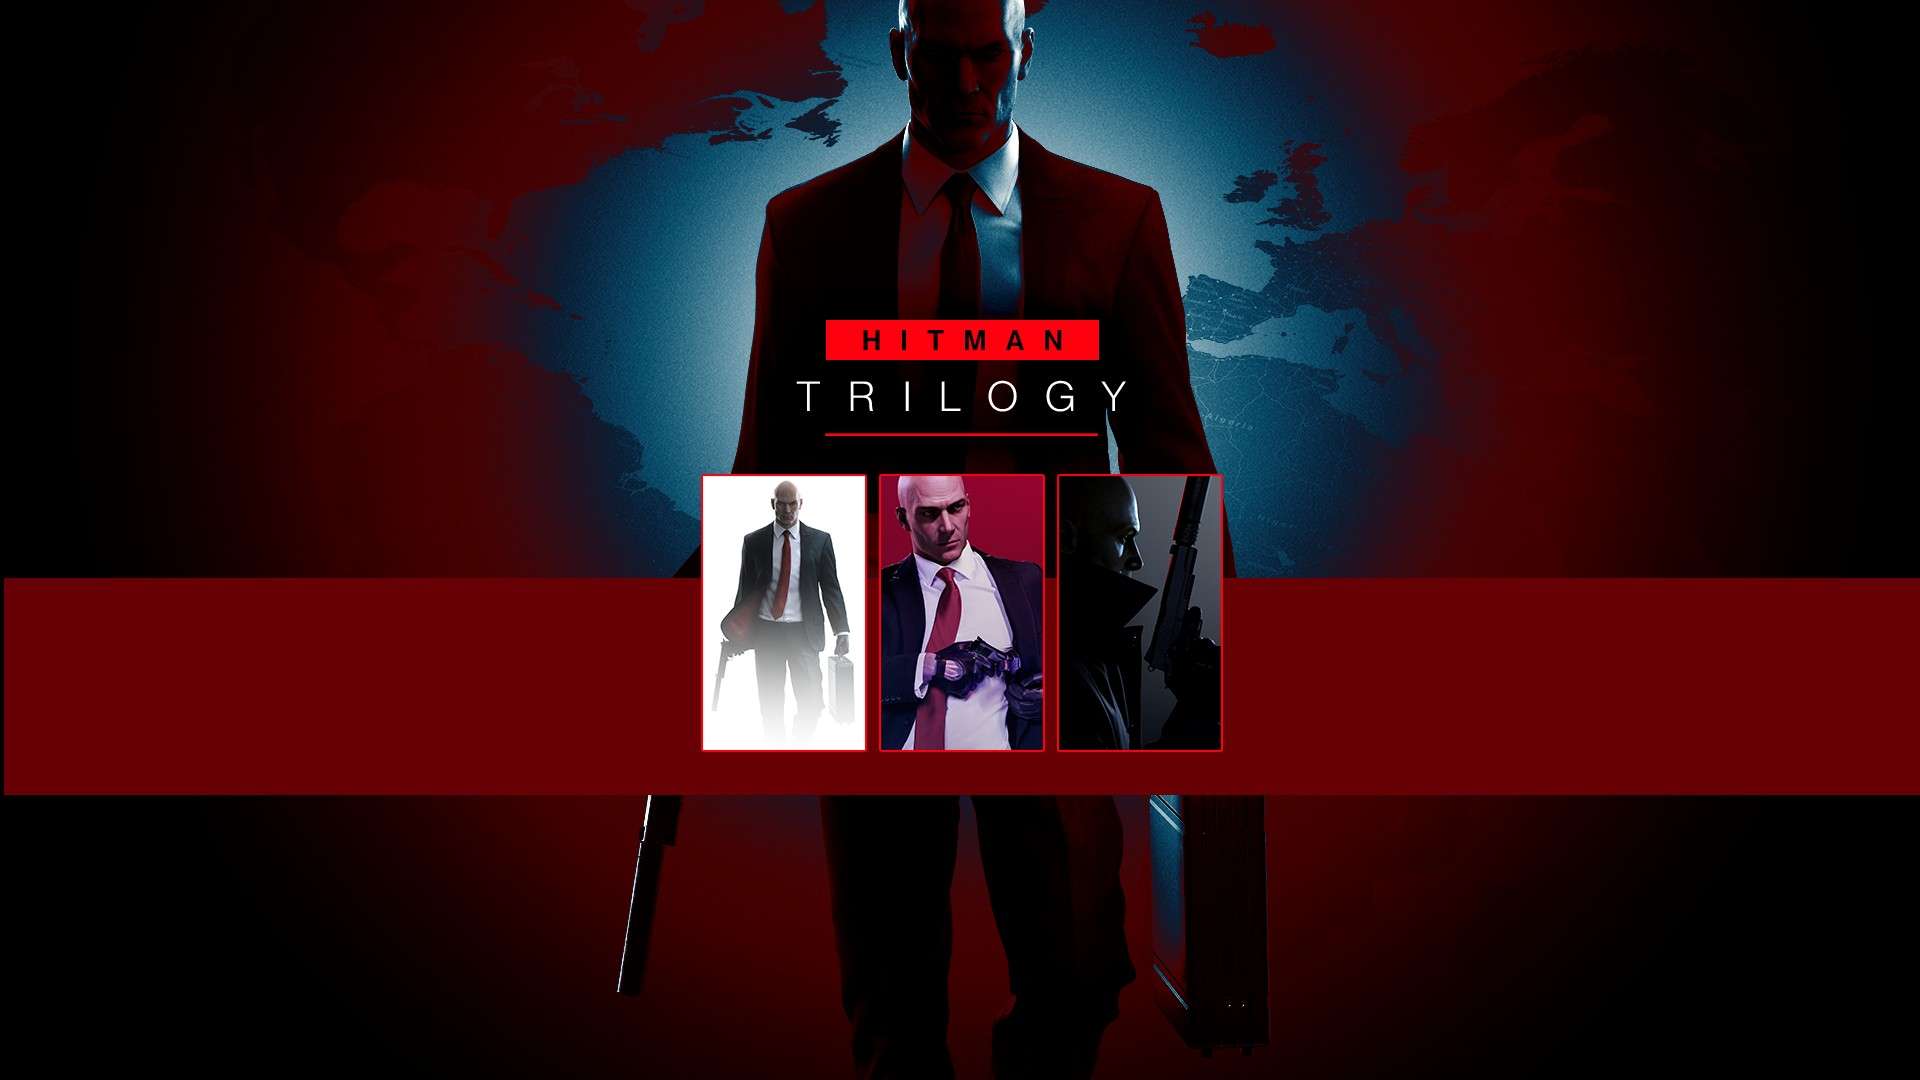 Hitman Trilogy Xbox